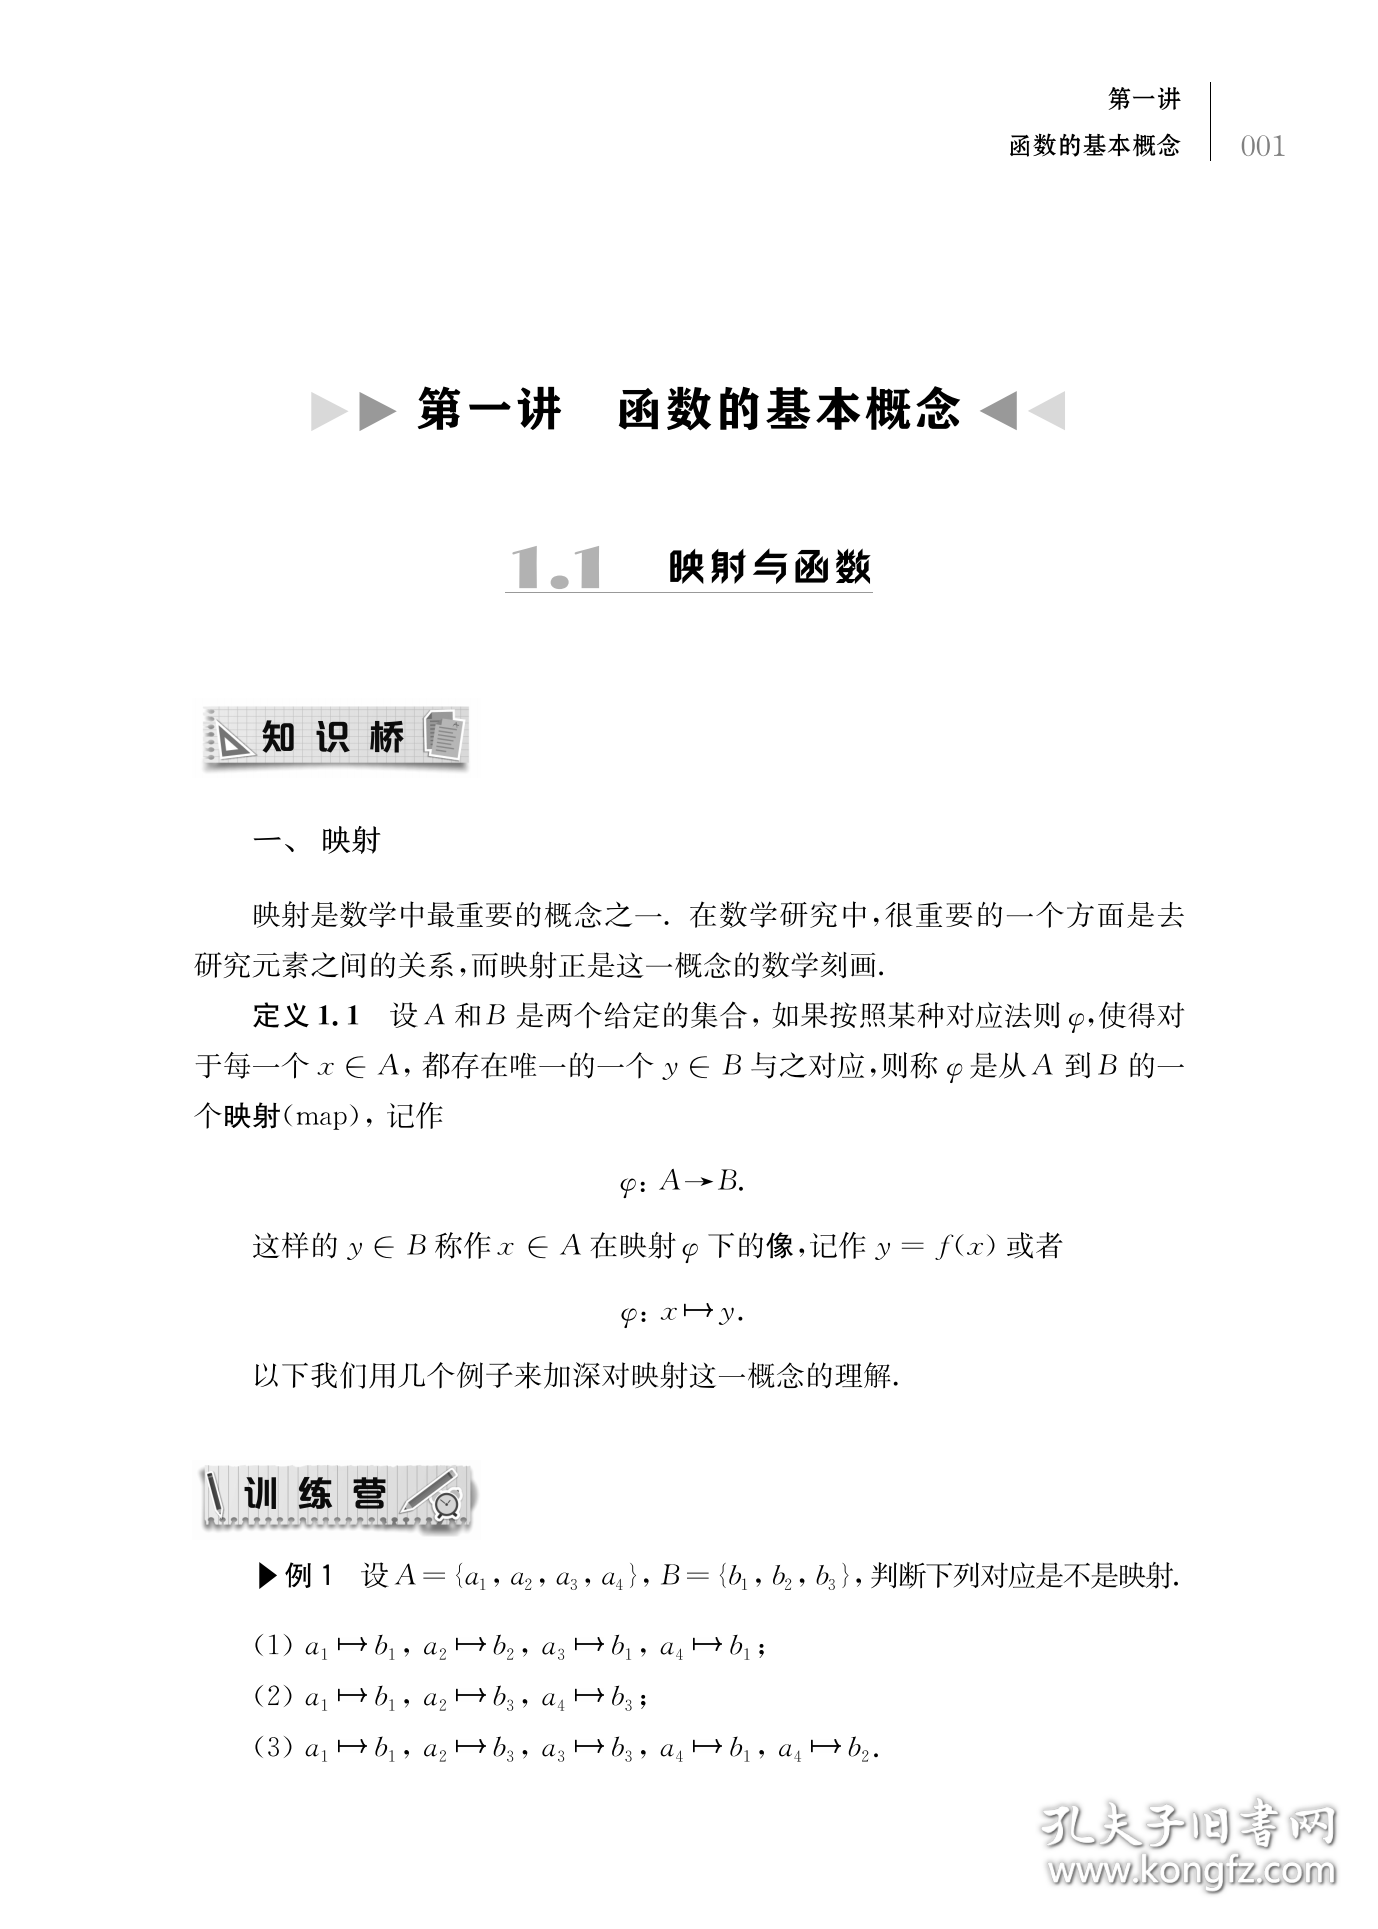 函数迭代与函数方程:升级版王伟叶，熊斌著9787542877796上海科技教育出版社有限公司